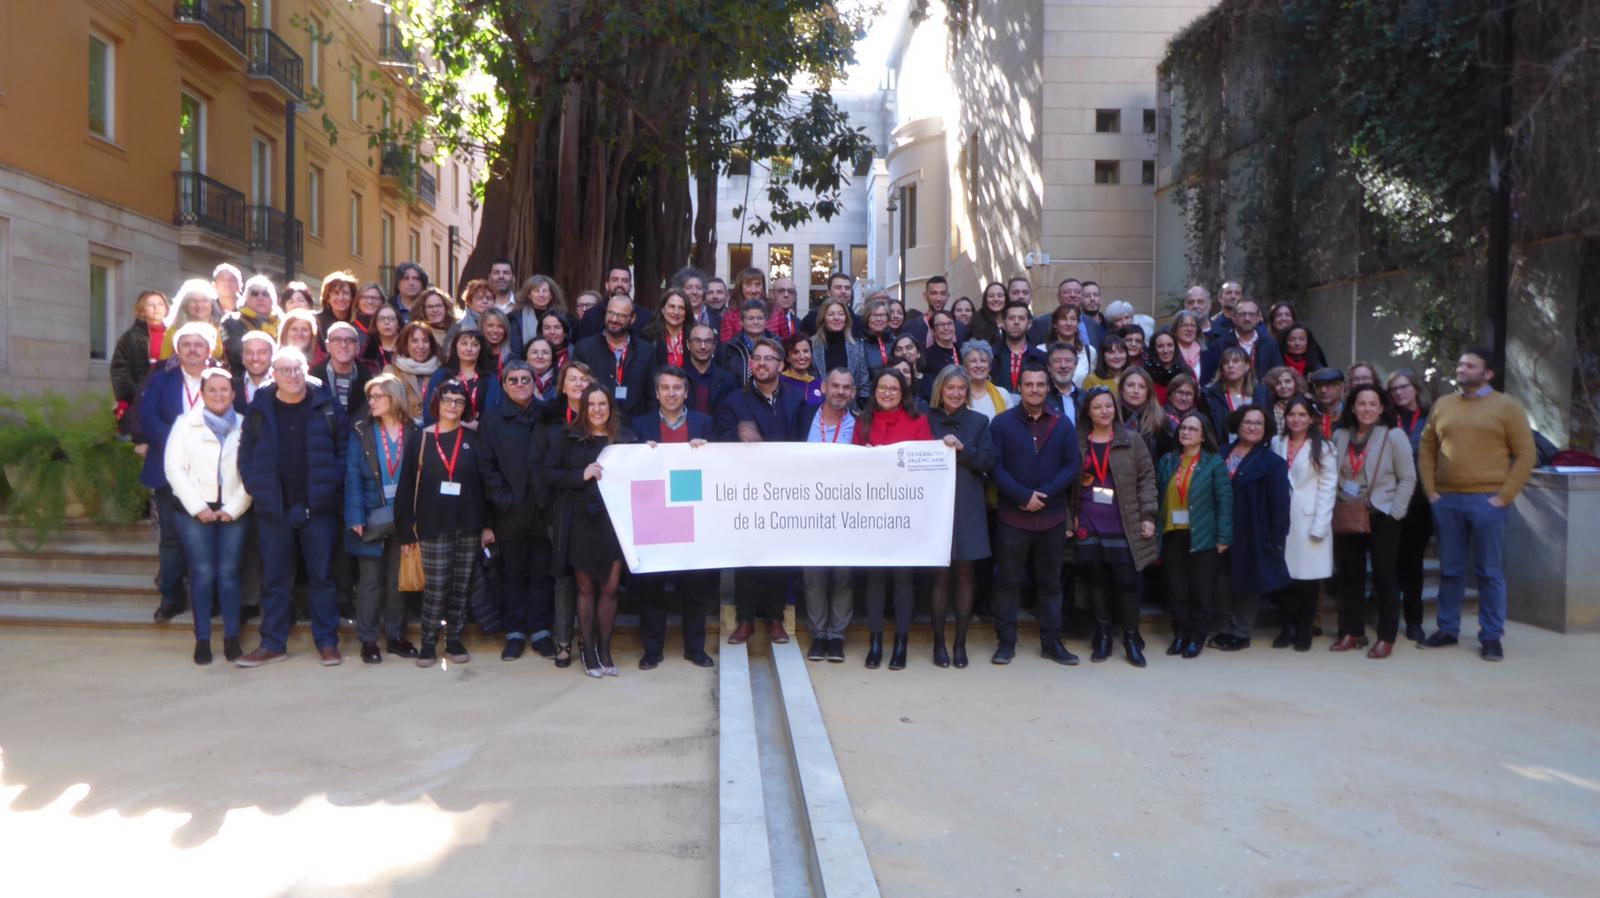 La Generalitat guardonada amb els Premis Europeus de Serveis Socials 2020 pel procés participatiu de la Llei de Serveis Socials Inclusius